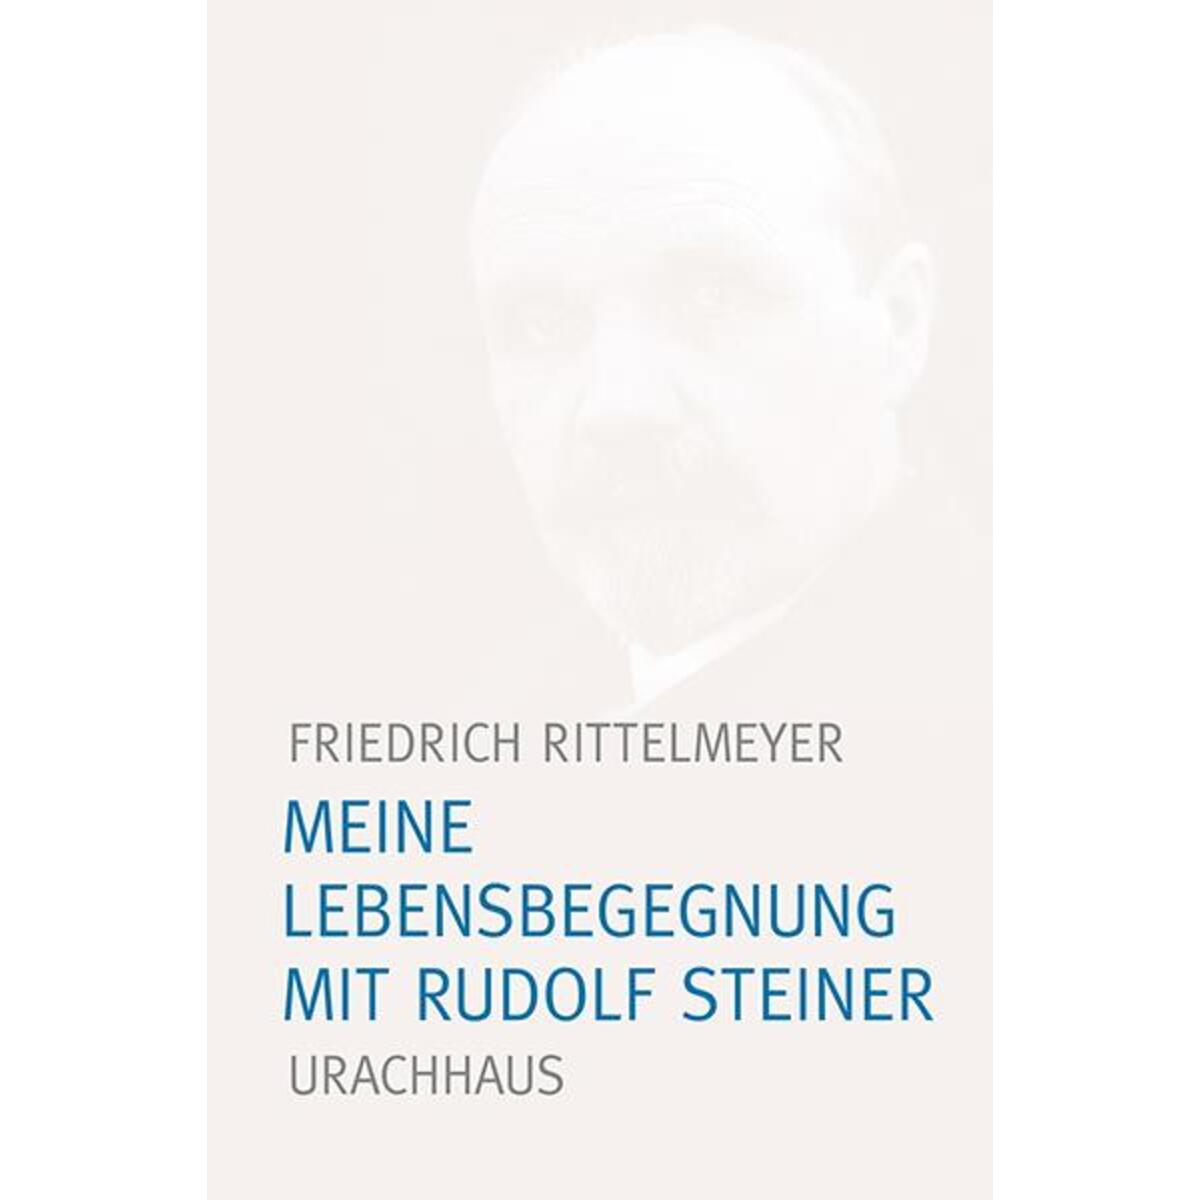 Meine Lebensbegegnung mit Rudolf Steiner von Urachhaus/Geistesleben